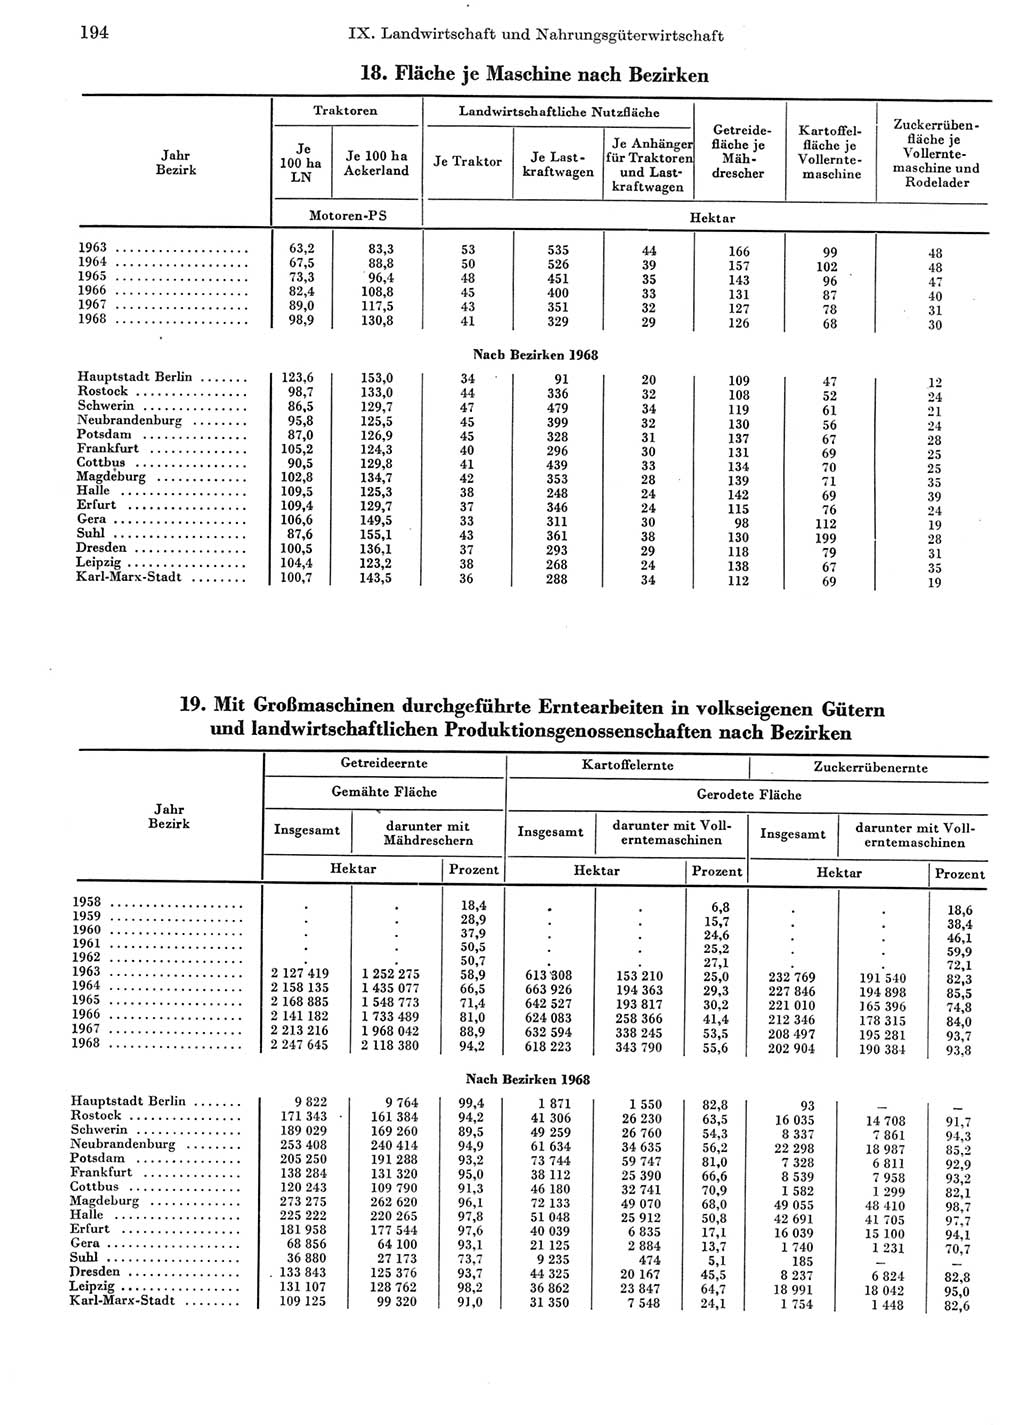 Statistisches Jahrbuch der Deutschen Demokratischen Republik (DDR) 1969, Seite 194 (Stat. Jb. DDR 1969, S. 194)